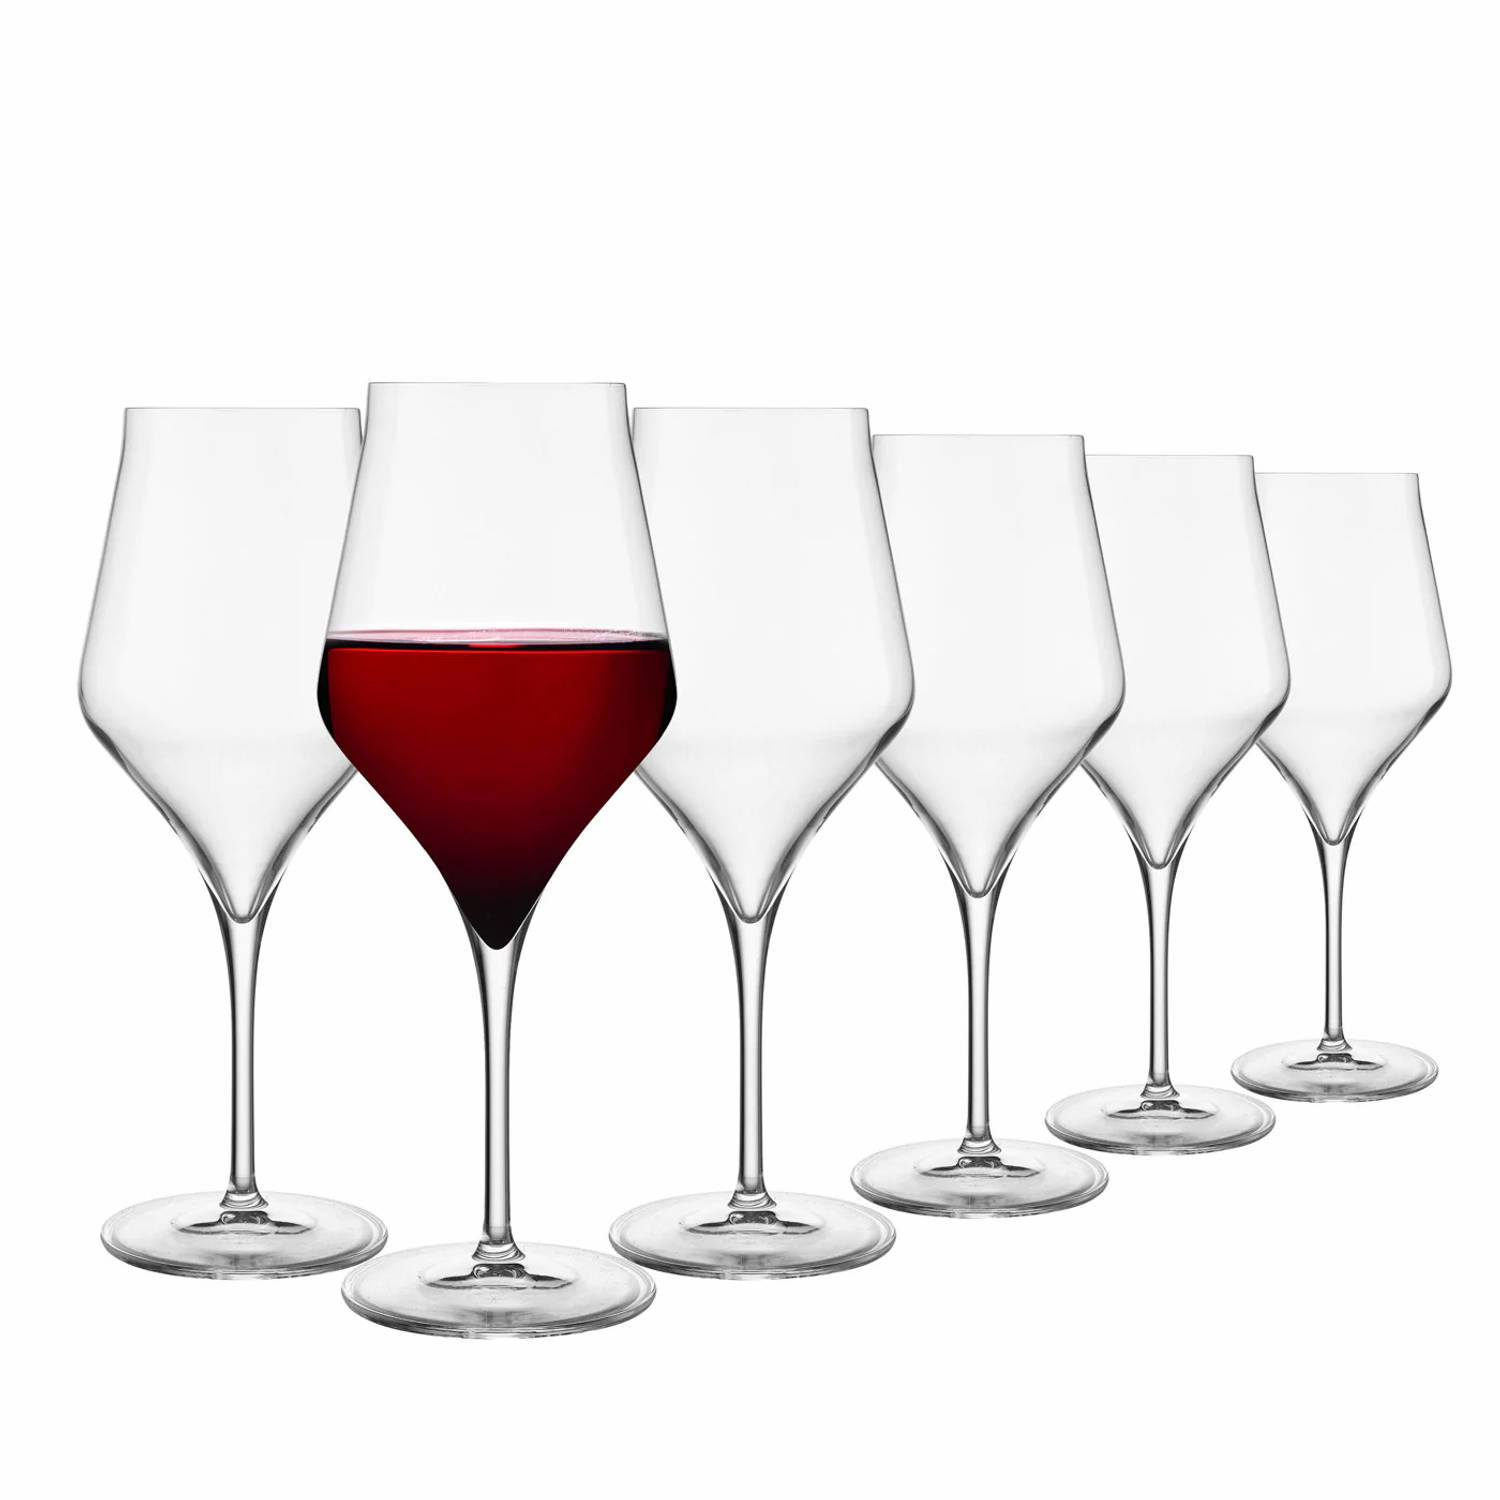 Luigi Bormioli Supremo set van 6 luxe rode wijnglazen van kristalglas 550ml - exclusieve serie - gebruikt door sommeliers en wijngaardeigenaren - geschikt voor de vaatwasser - unie